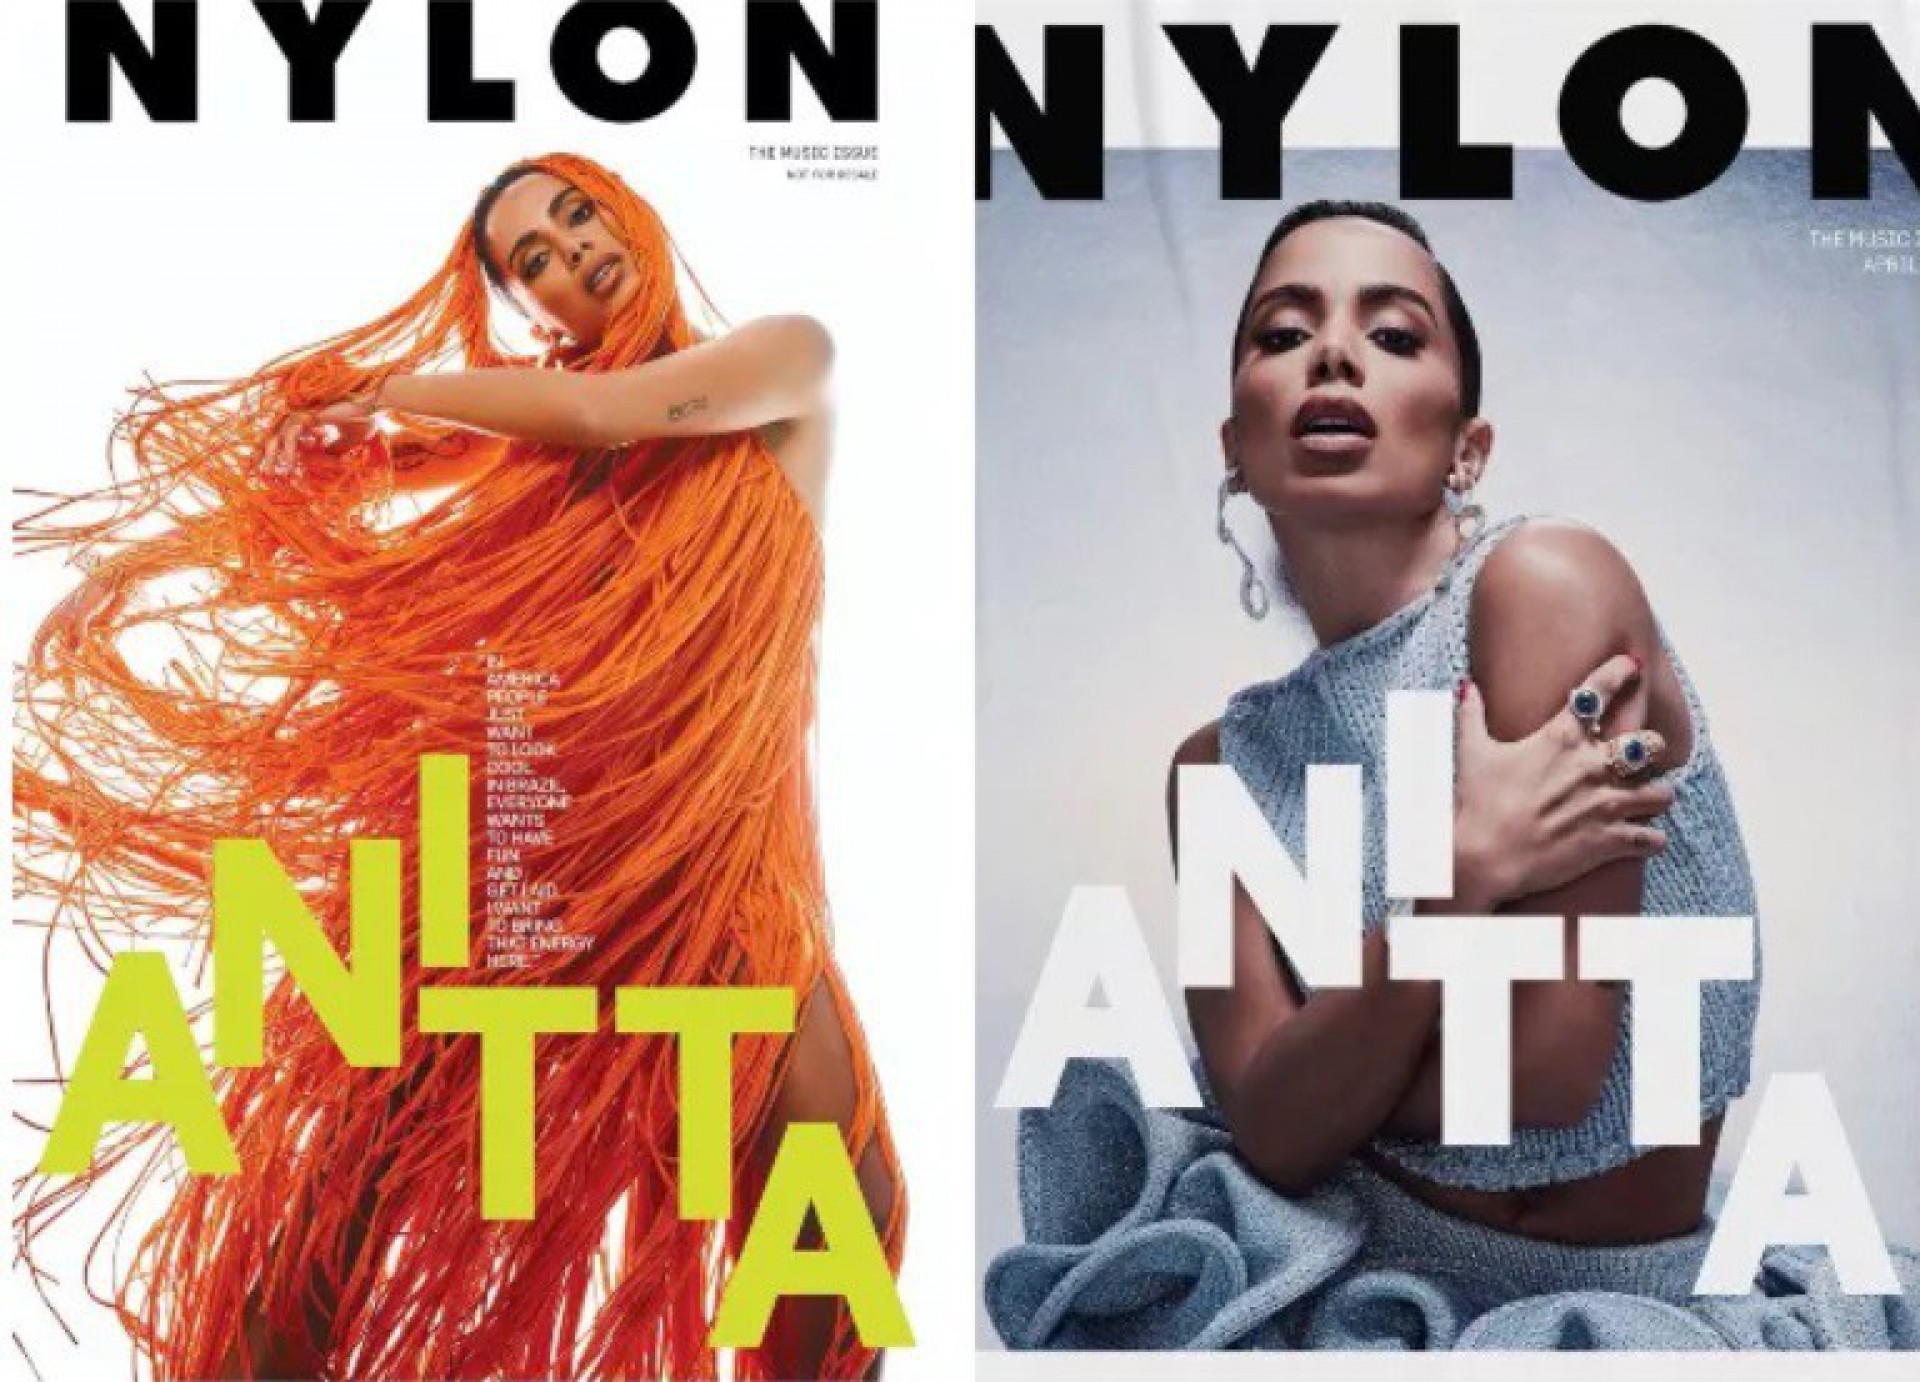 Revista americana modifica capa após manchete polêmica de Anitta - Reprodução/ Nylon